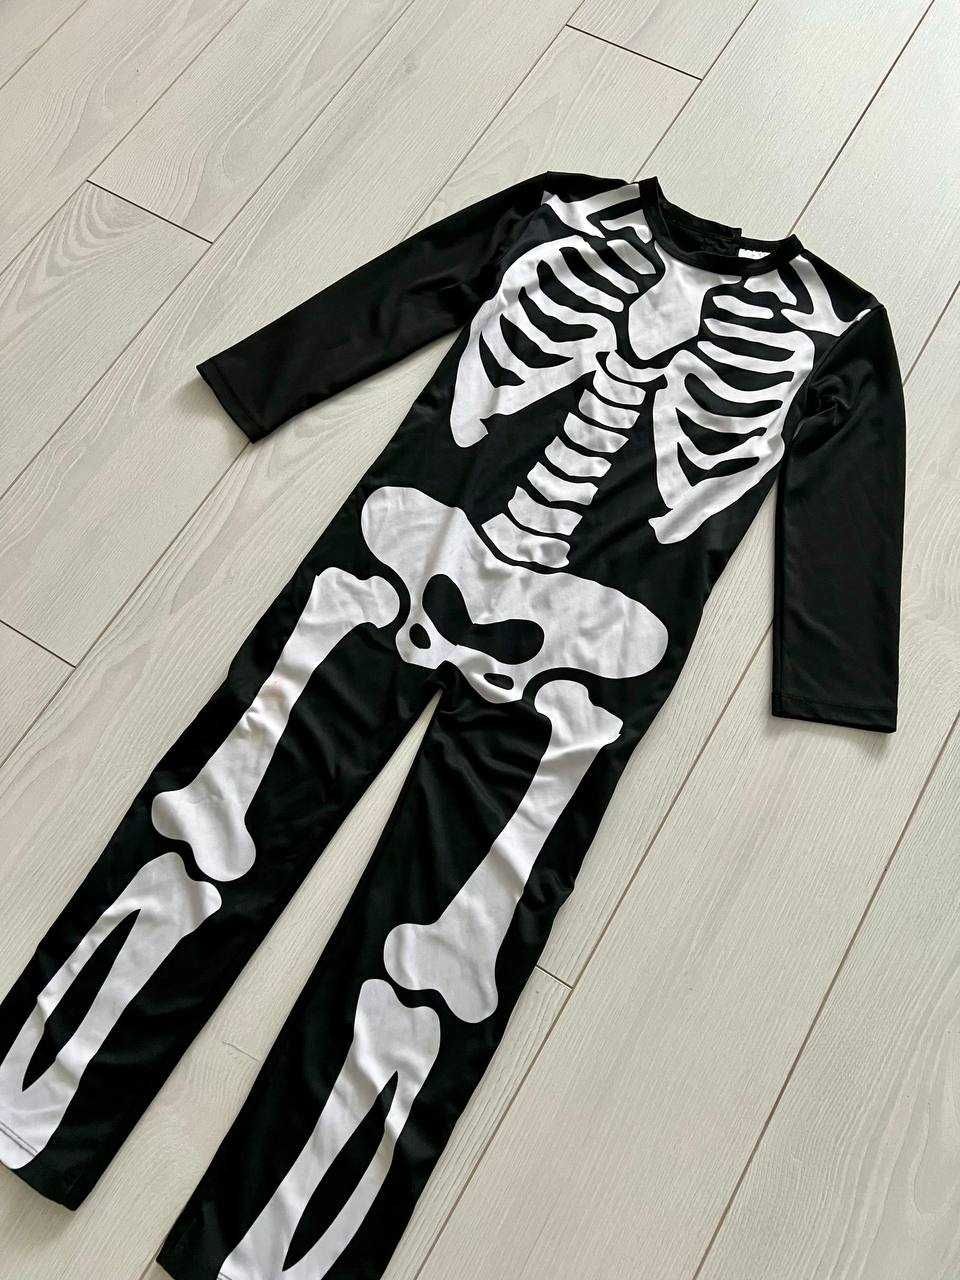 Карнавальный костюм Скелета на Хэллоуин 5-6 лет